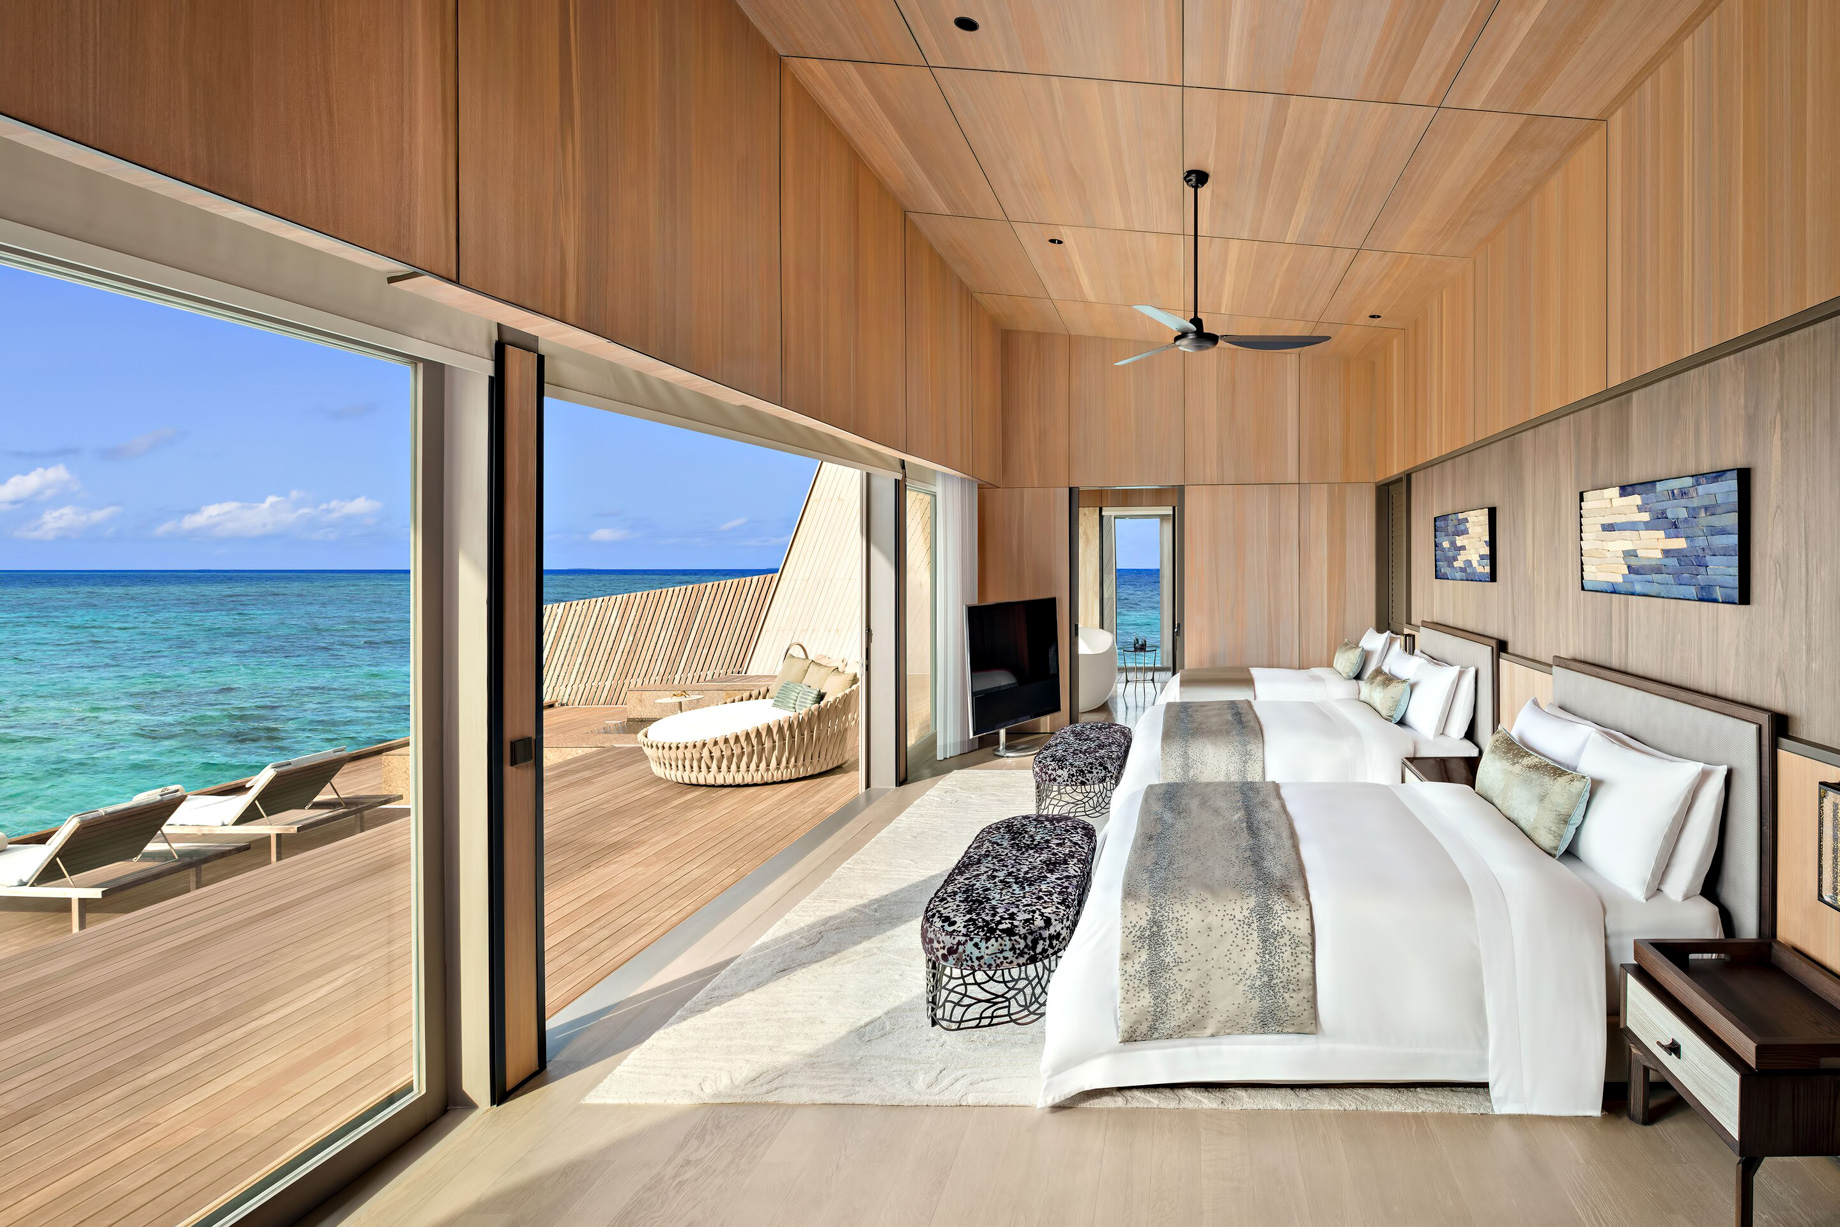 The St. Regis Maldives Vommuli Resort – Dhaalu Atoll, Maldives – King Twin John Jacob Astor Estate